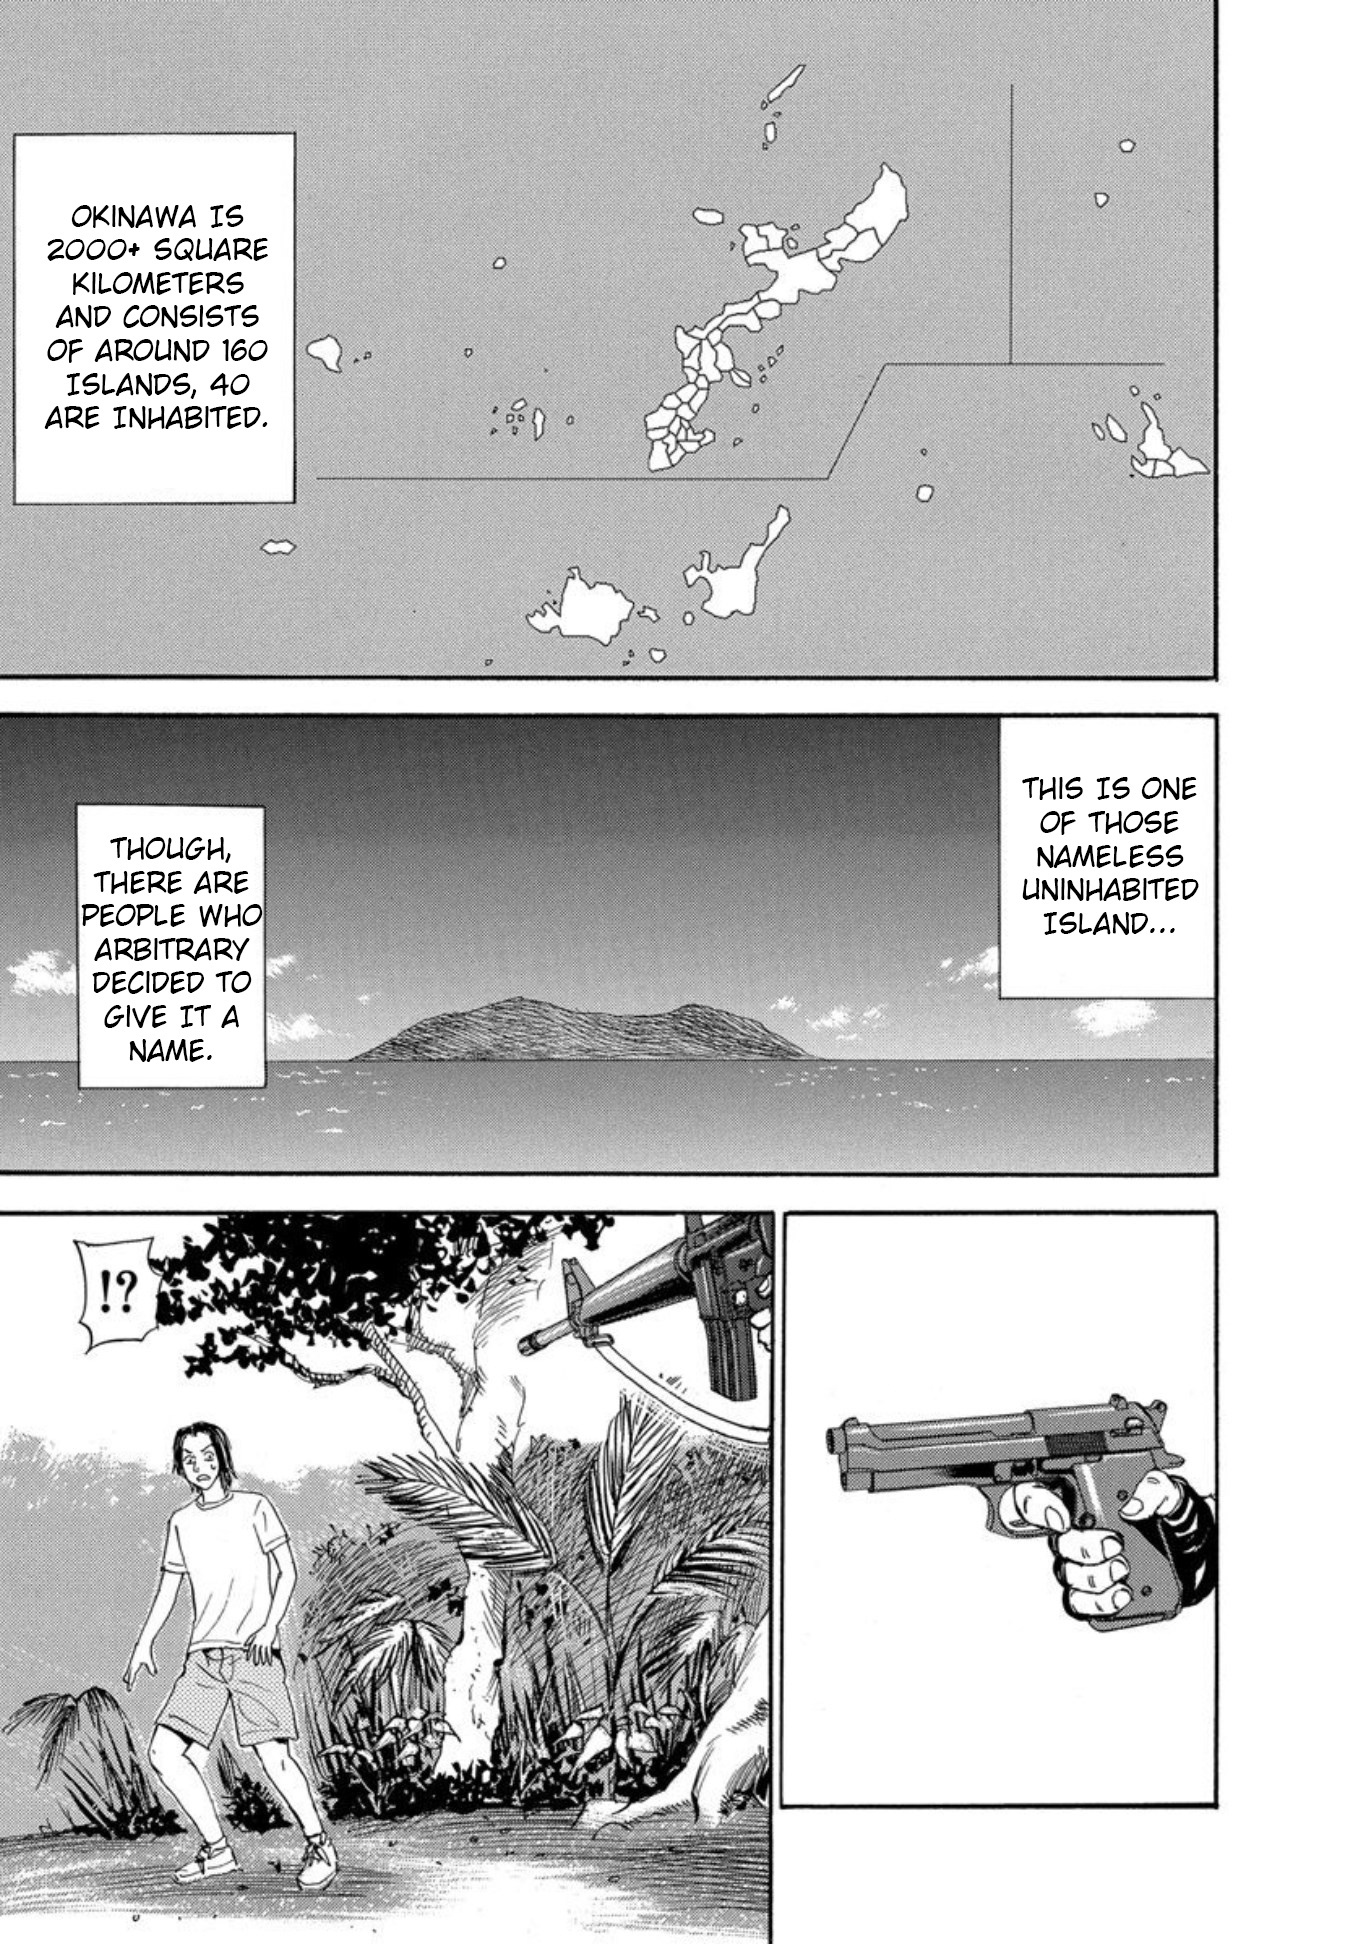 Uramiya Honpo - Page 3